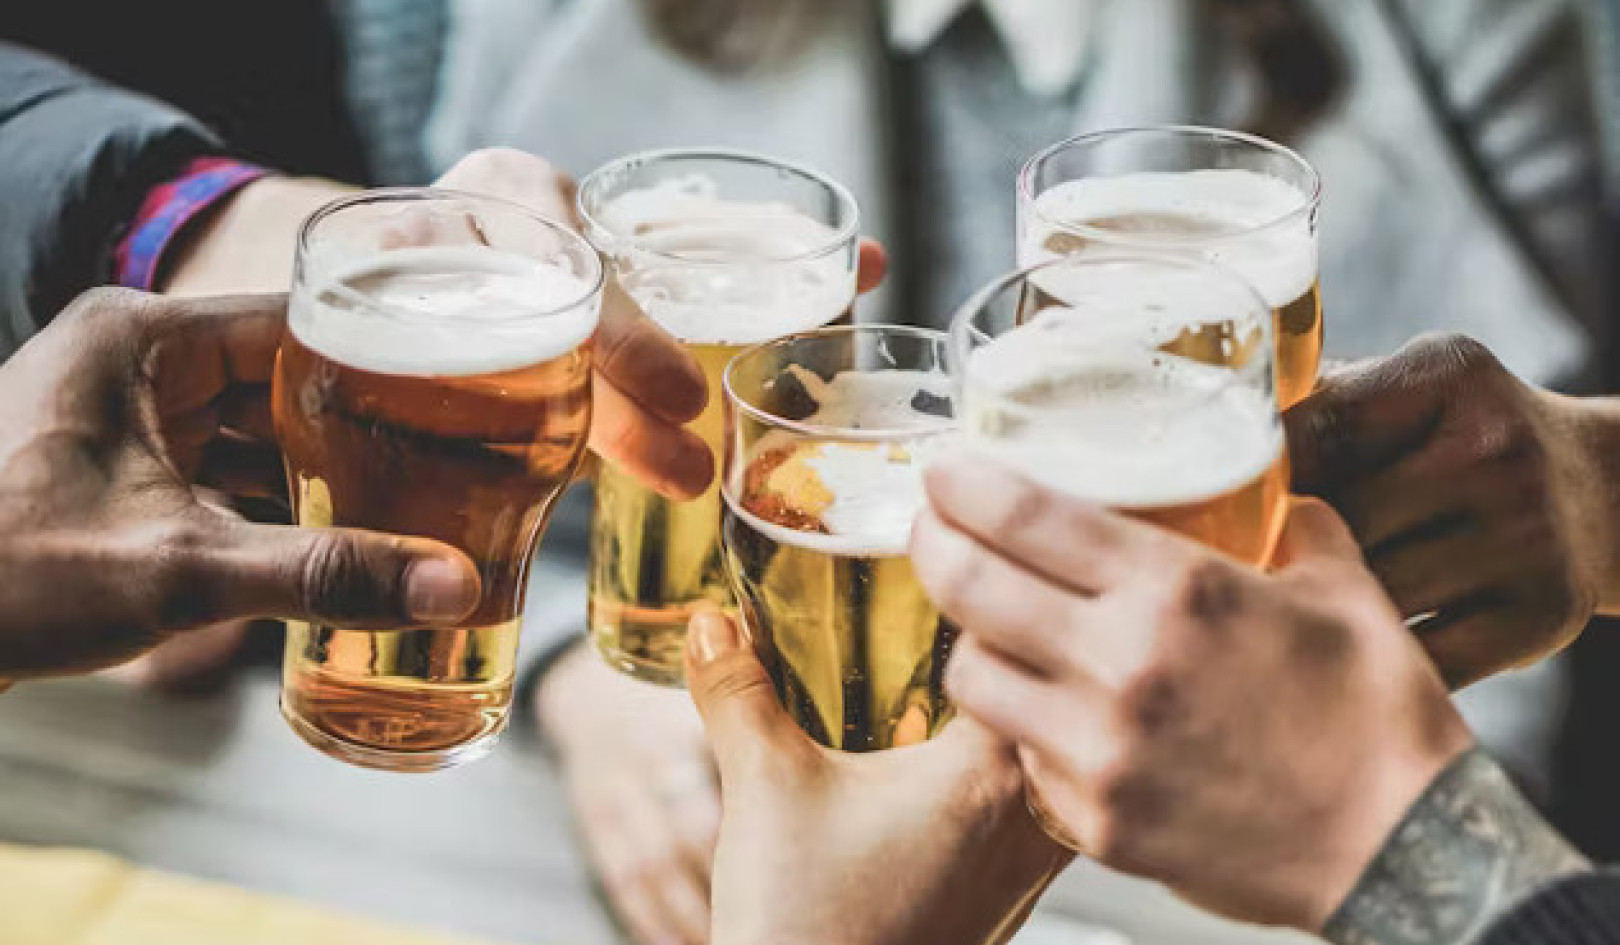 Adakah Minuman Sederhana Benarkah Menyihatkan? Membongkar Fakta